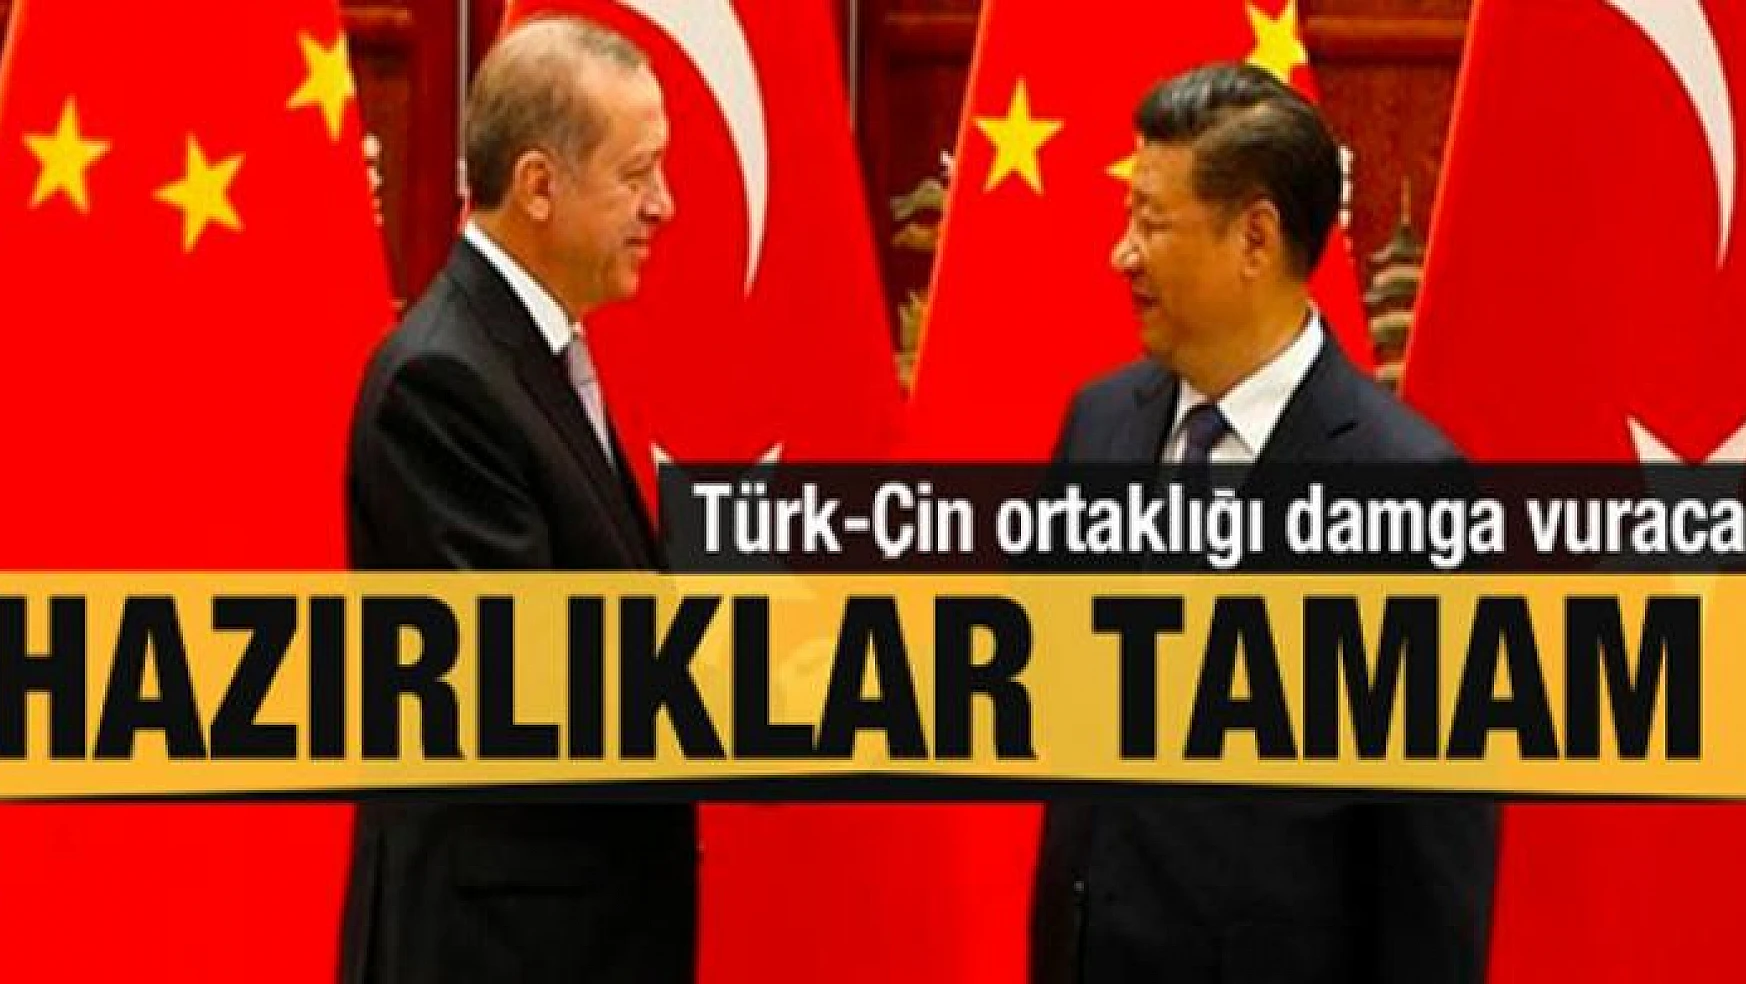 Hazırlıklar tamam! Çin-Türkiye iş birliği damga vuracak